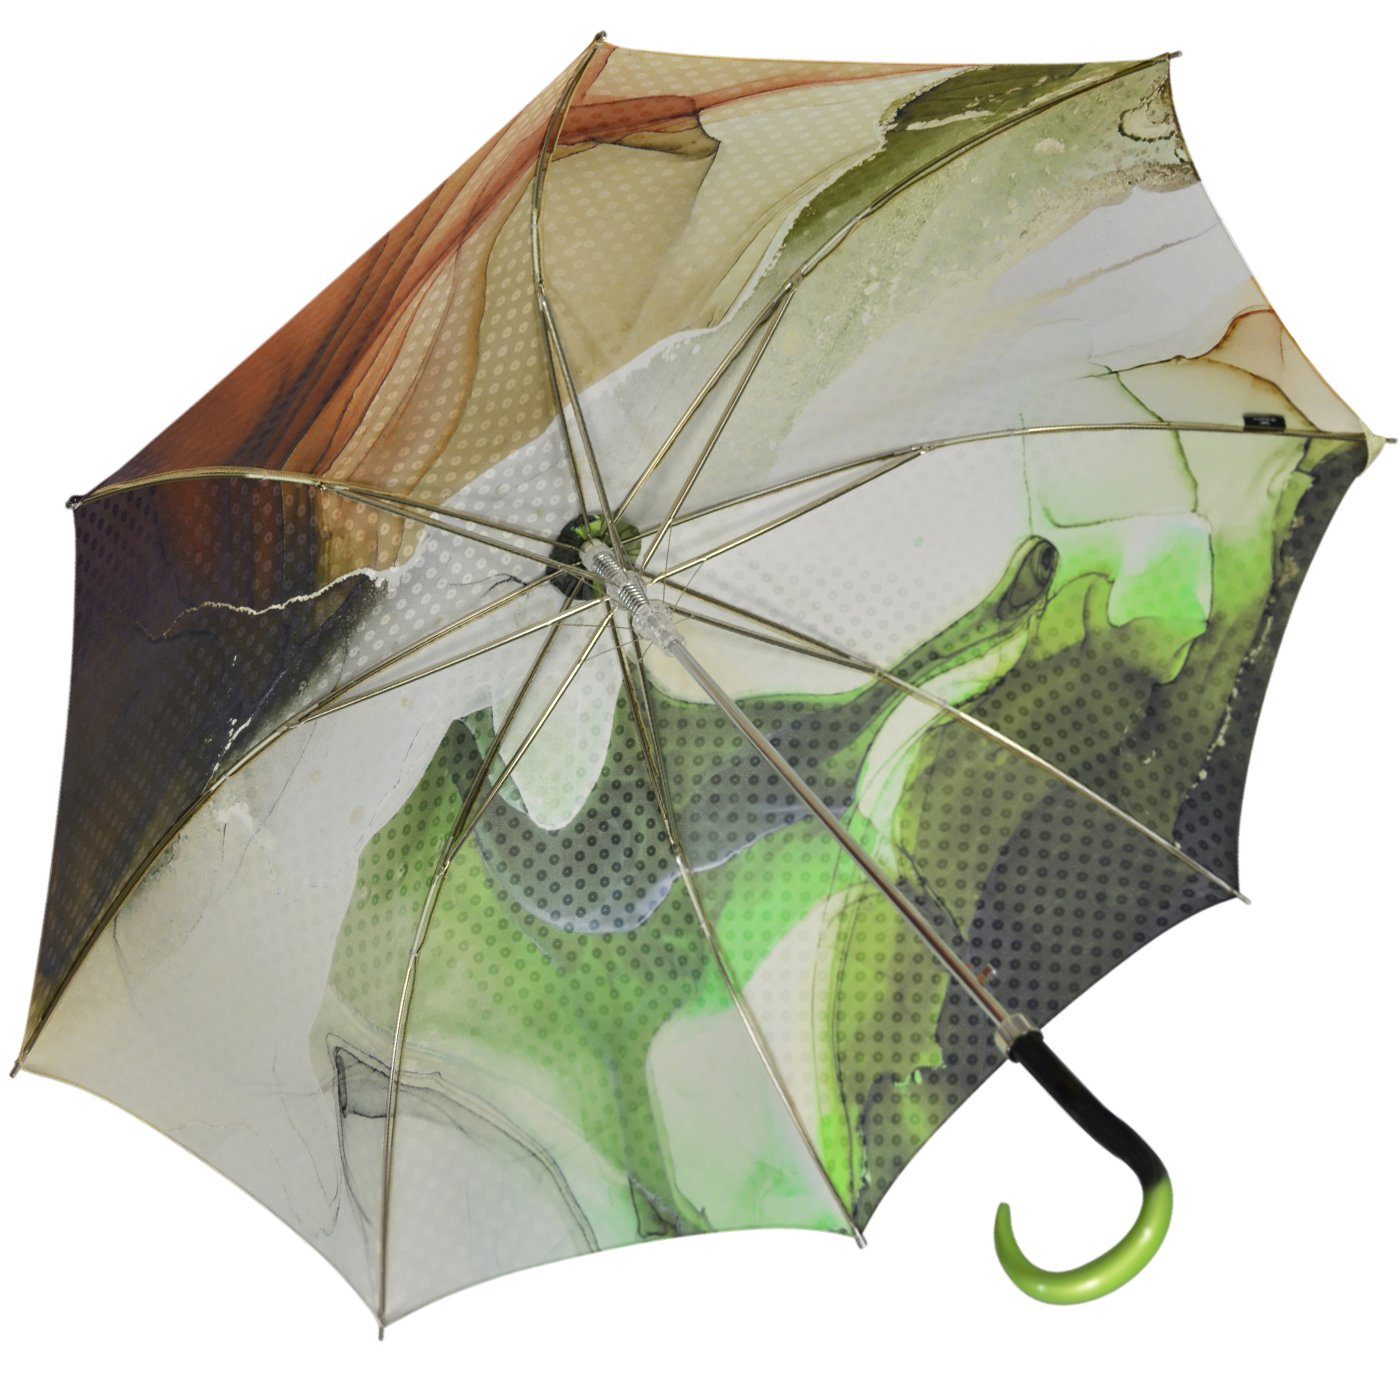 doppler MANUFAKTUR Langregenschirm edler, handgearbeiteter Manufaktur- Regenschirm, einzigartige Designs in leuchtenden Farben